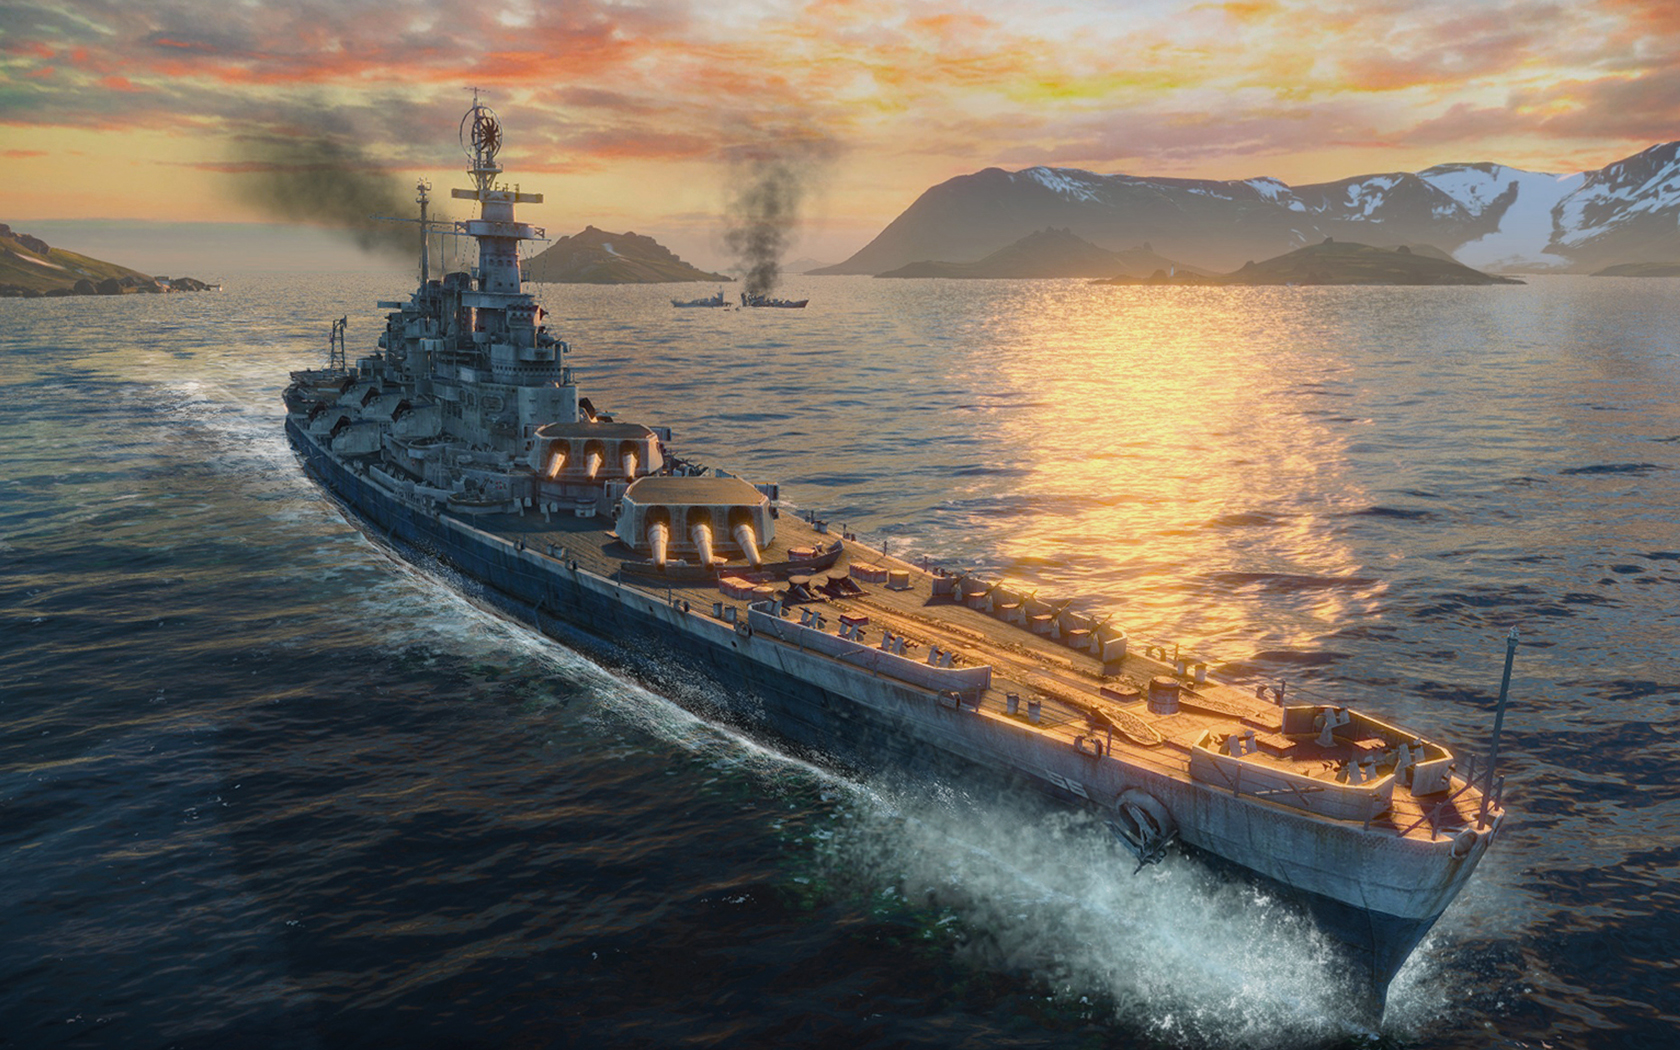 画像集 021 Gamescom 戦艦 長門 の主砲が火を噴き 駆逐艦 吹雪 が縦横無尽に航行 World Of Warships のデモプレイで新情報が次々と明らかに